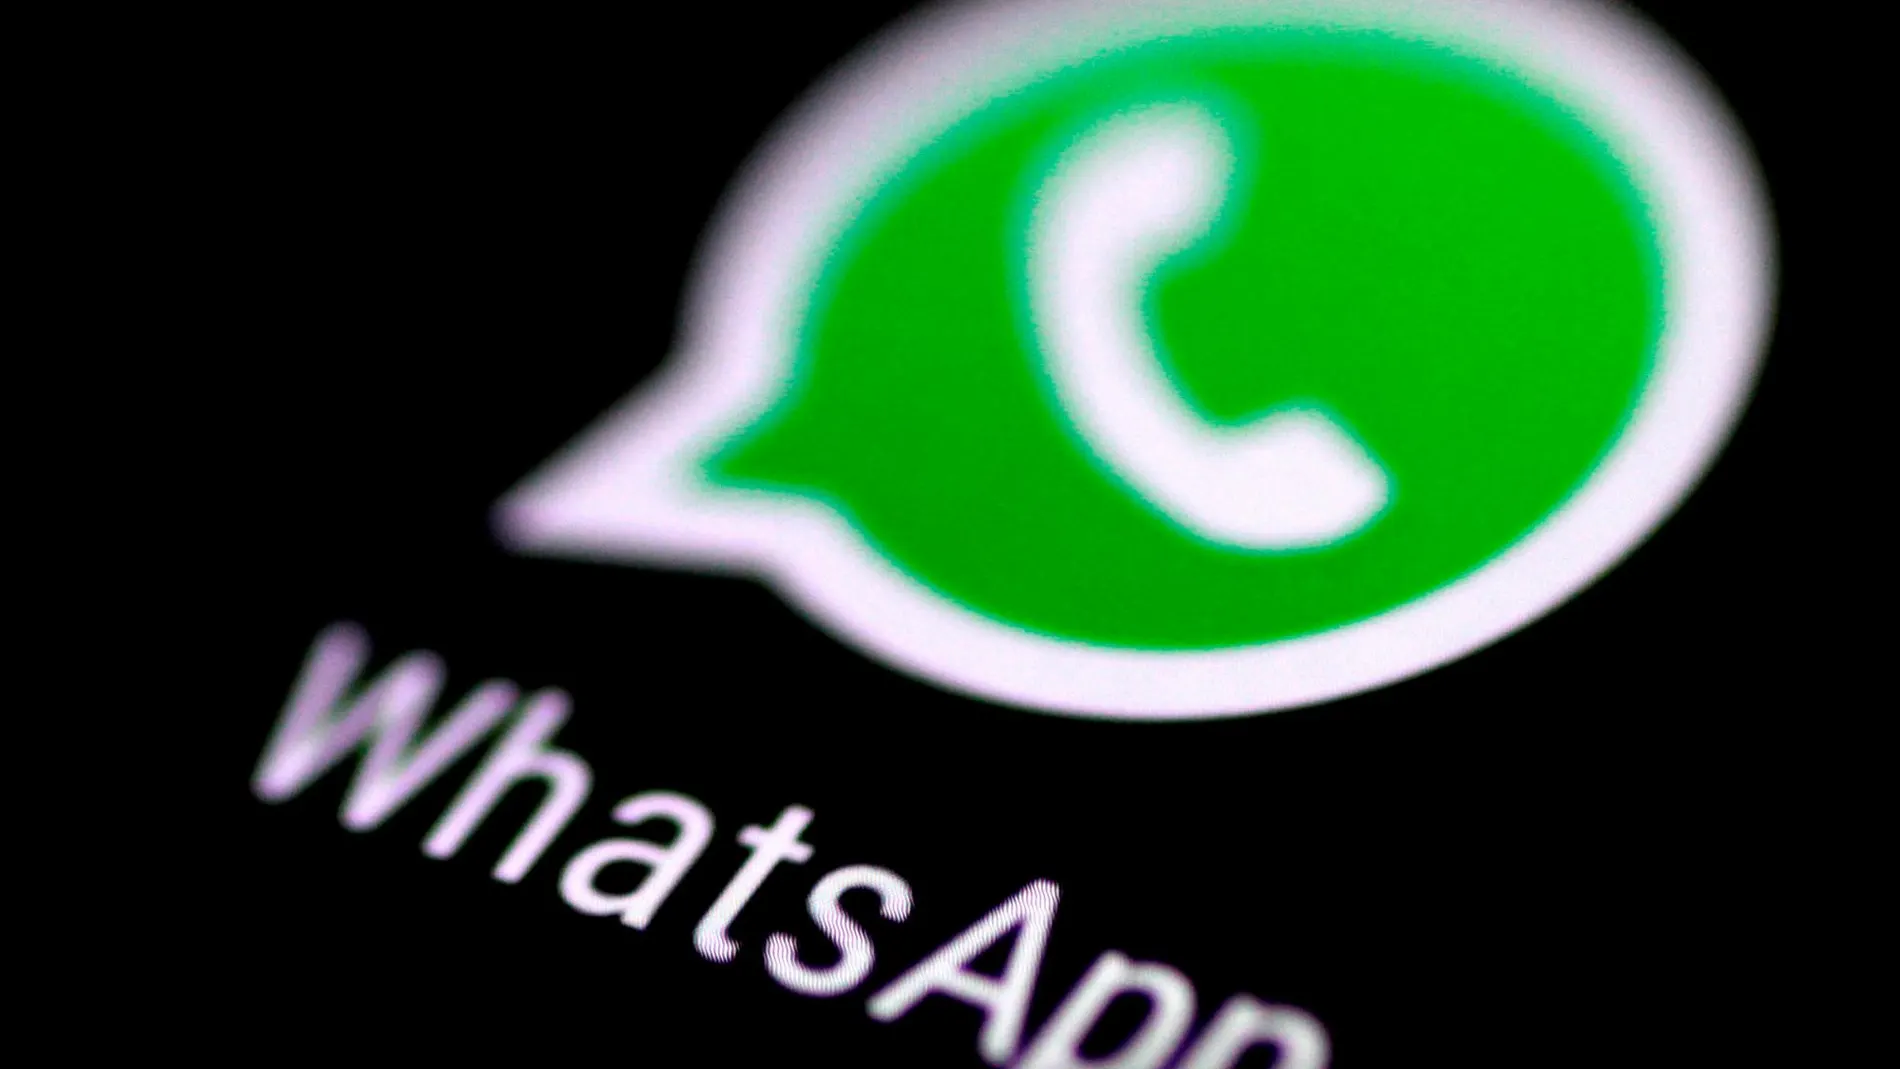 Un fallo de seguridad en WhatsApp permite que otras personas puedan leer tus mensajes